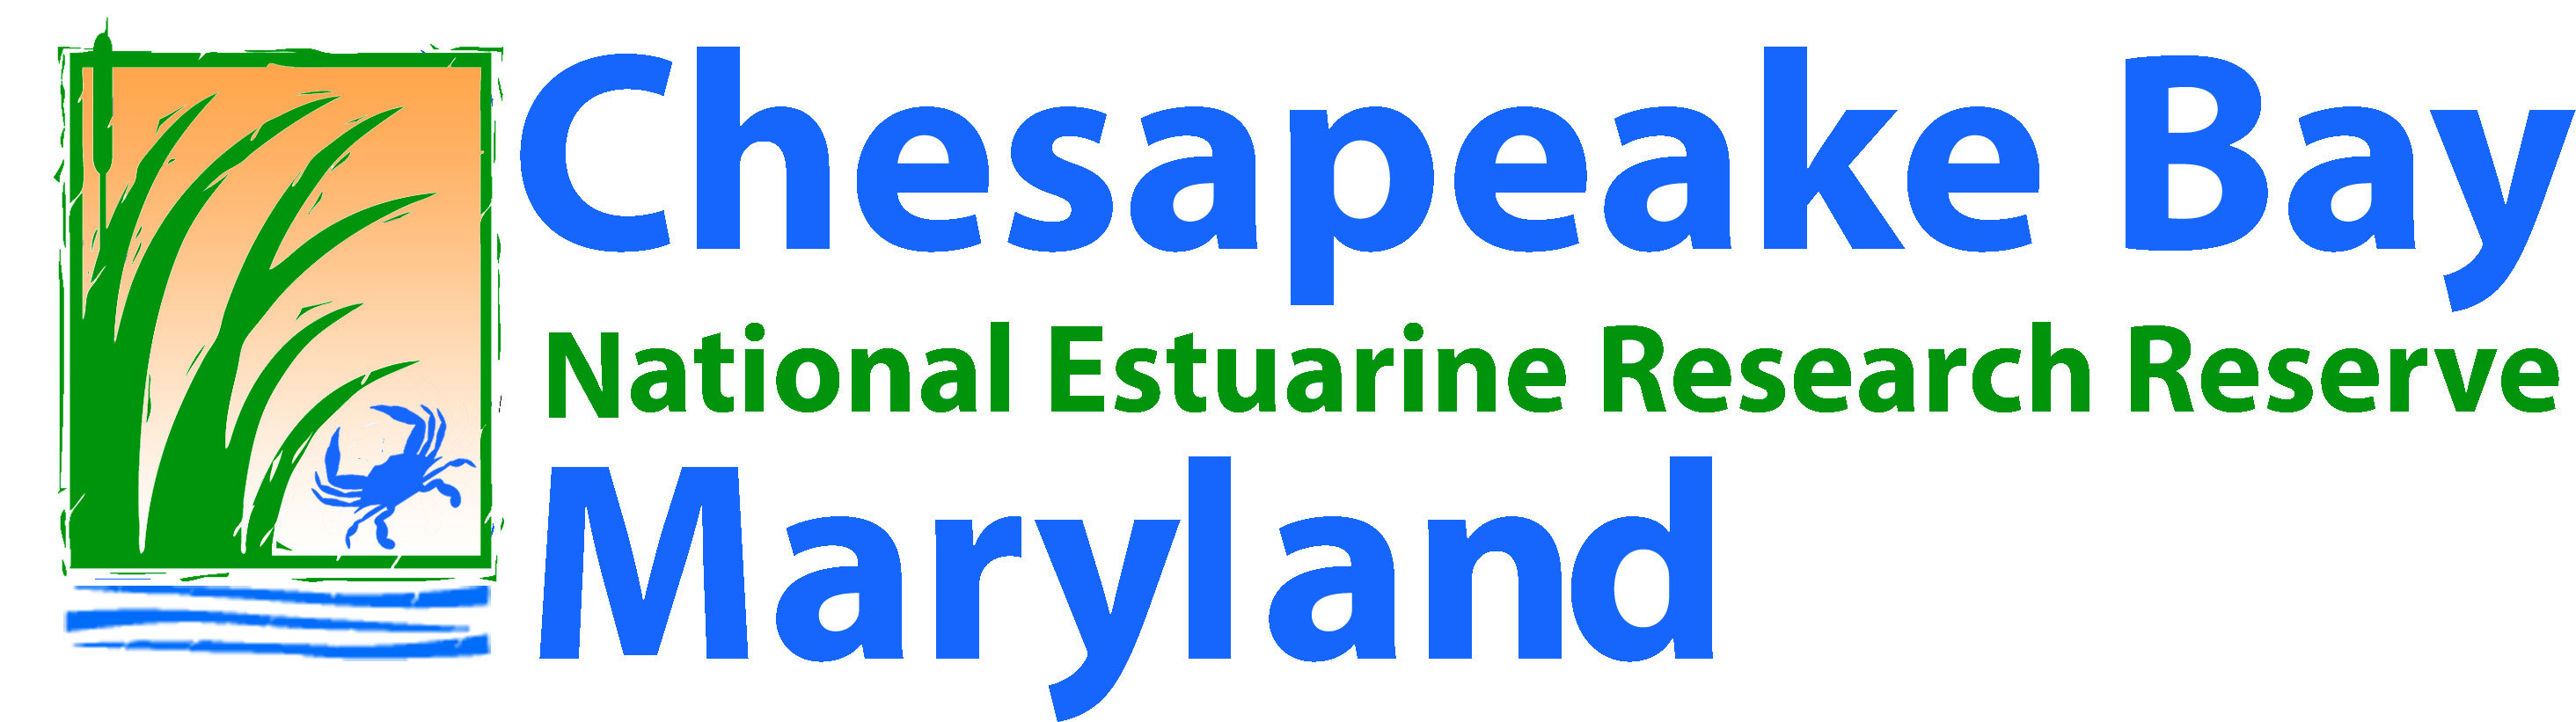 Chesapeake Bay National Estuarine Reserve Maryland logo